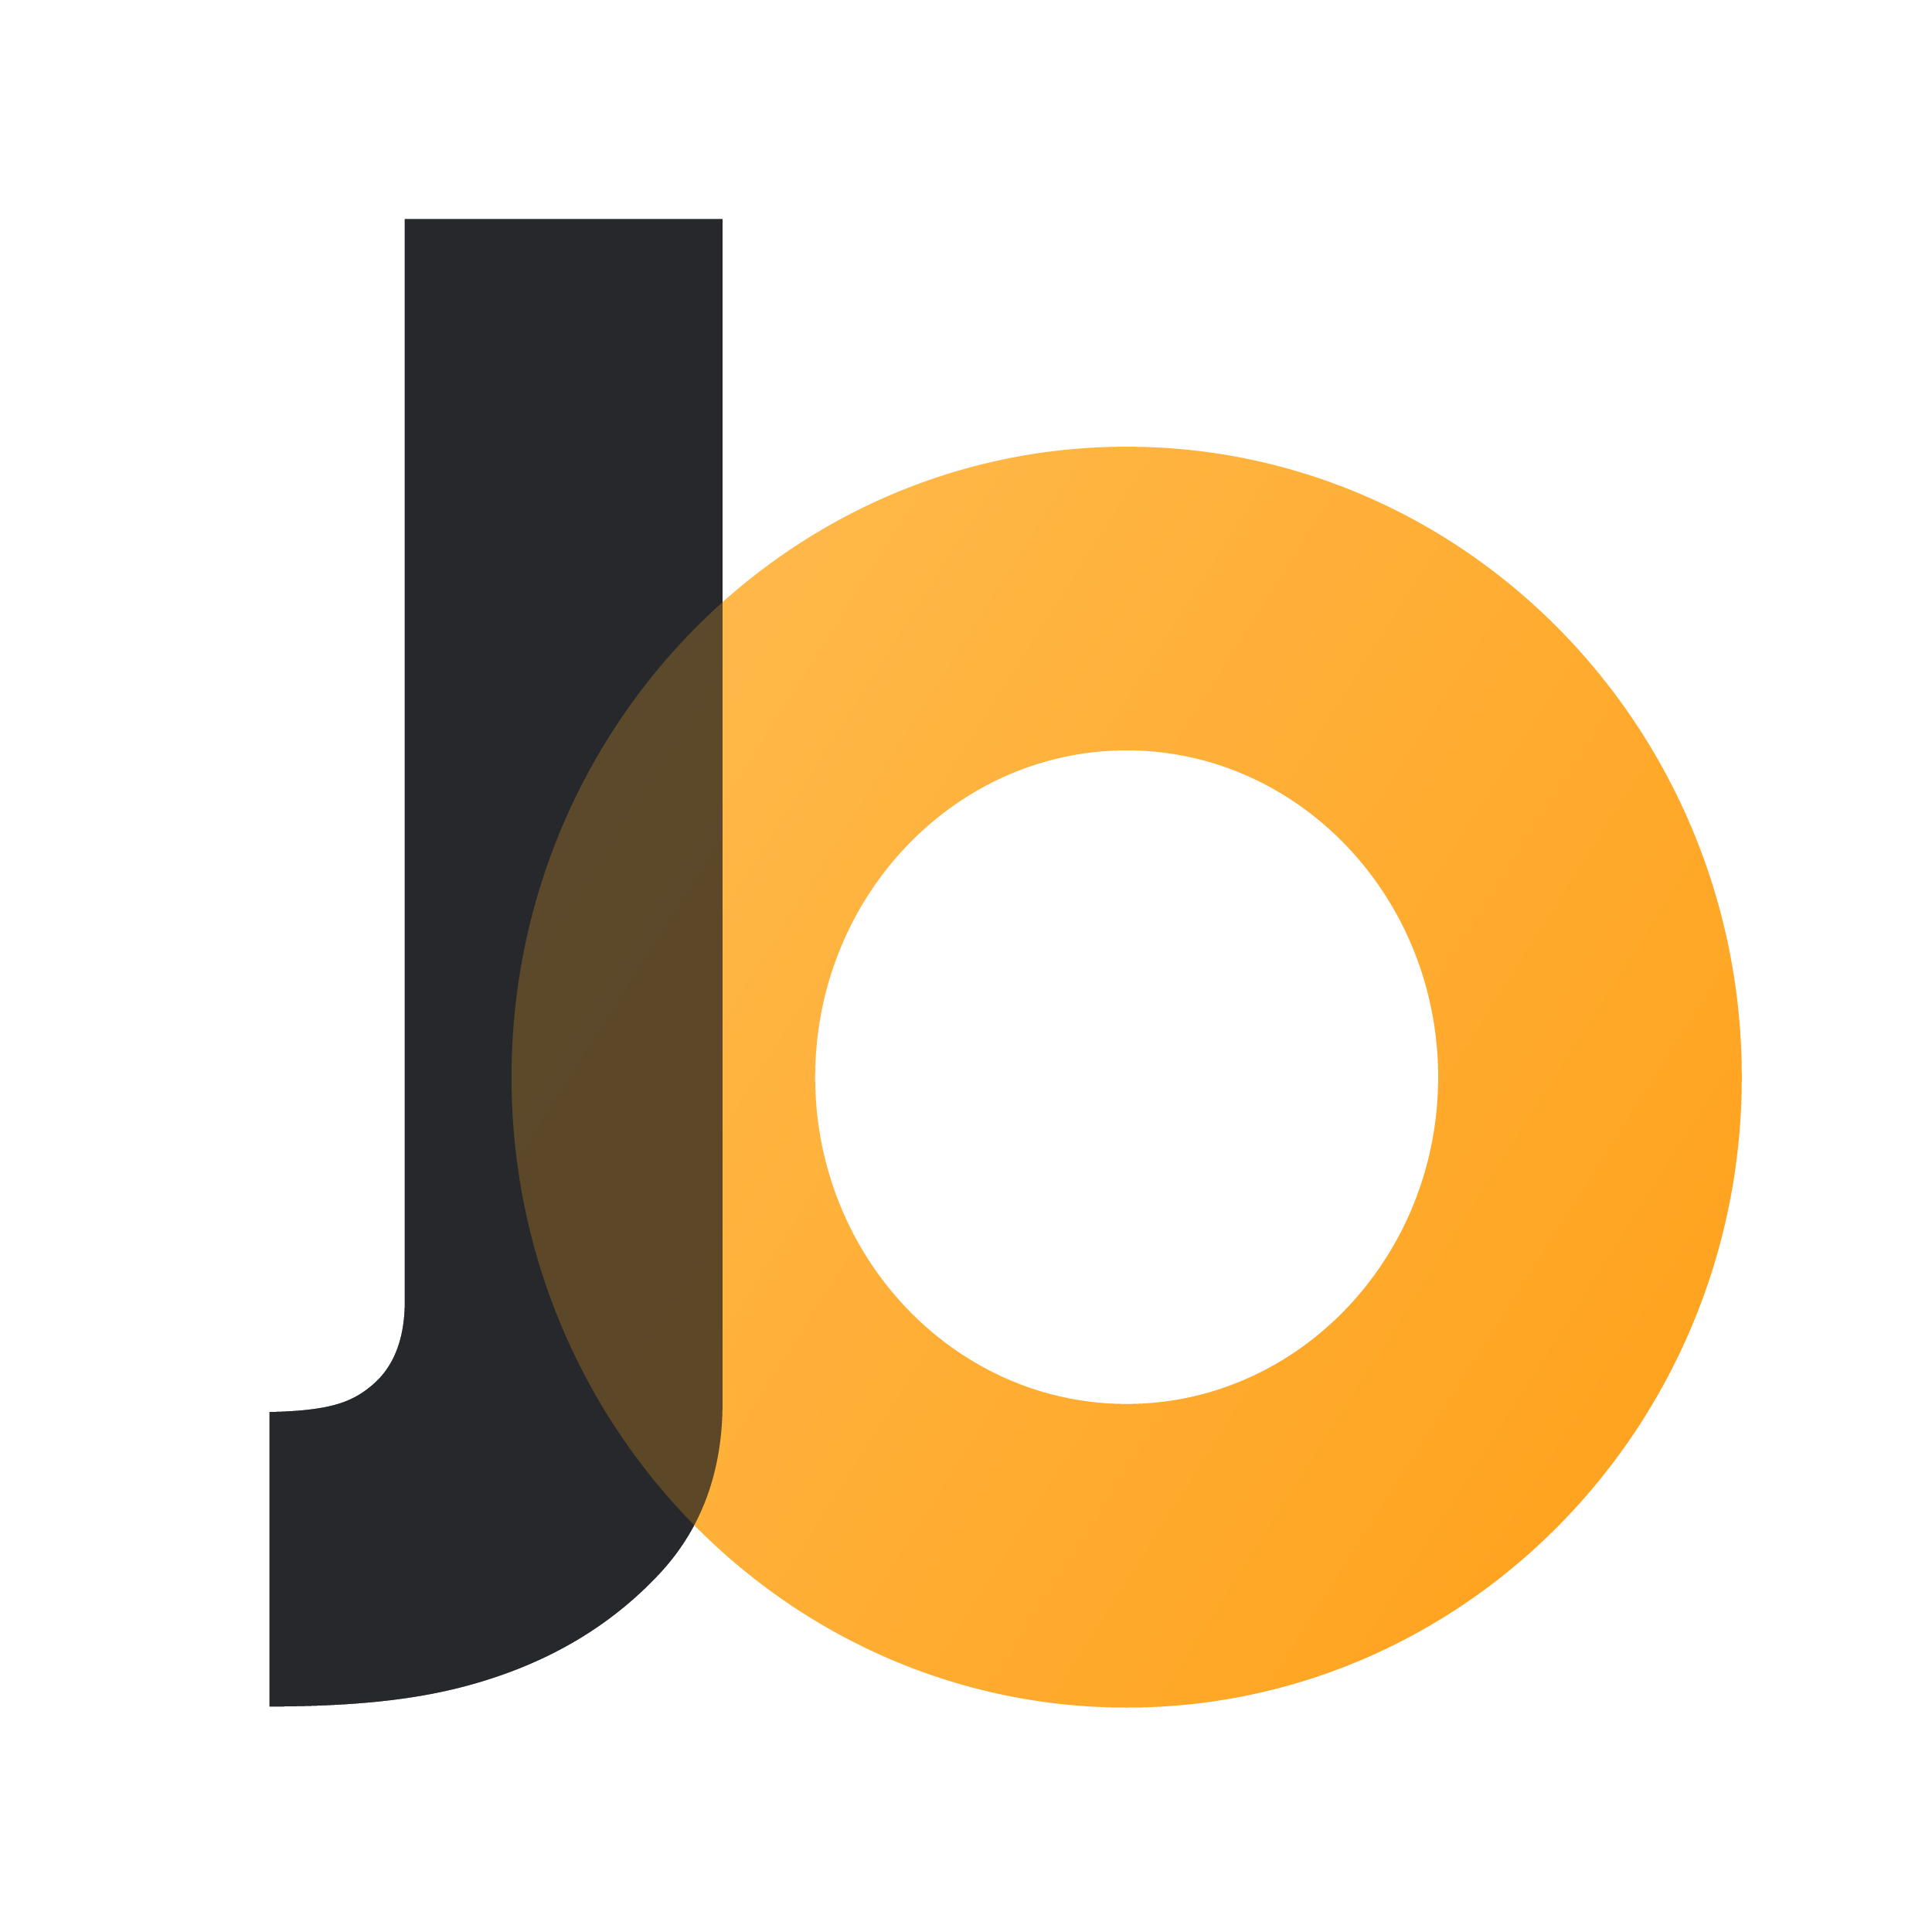 J-O-icon_Zeichenflache-1